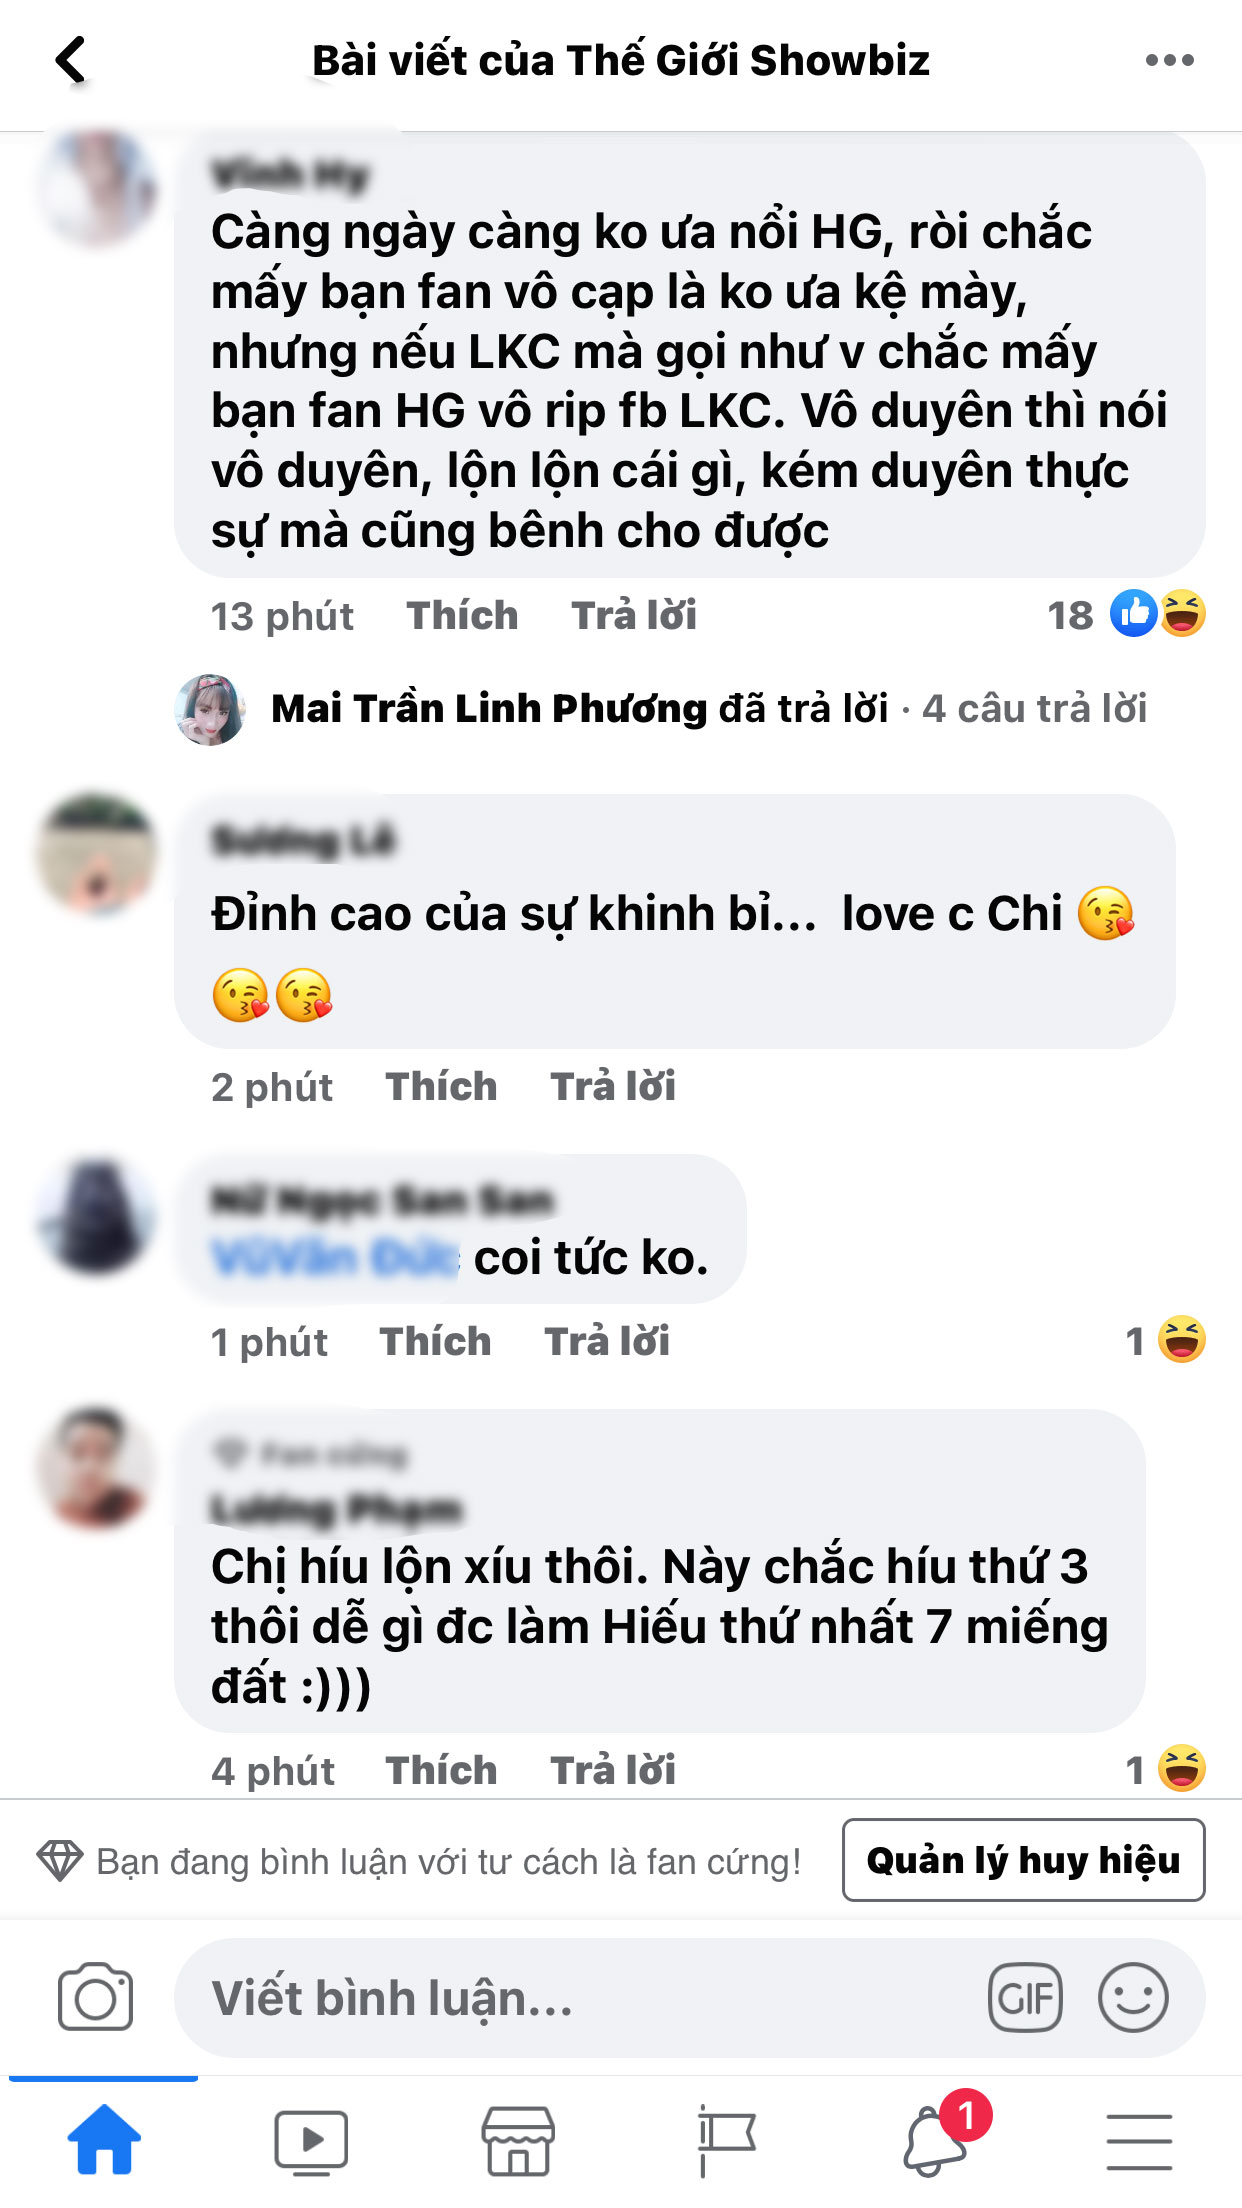 Huong-giang-bat-ngo-bi-cdm-chi-trich-gay-gat-khi-co-hanh-dong-thieu-te-nhi-voi-lam-khanh-chi-3